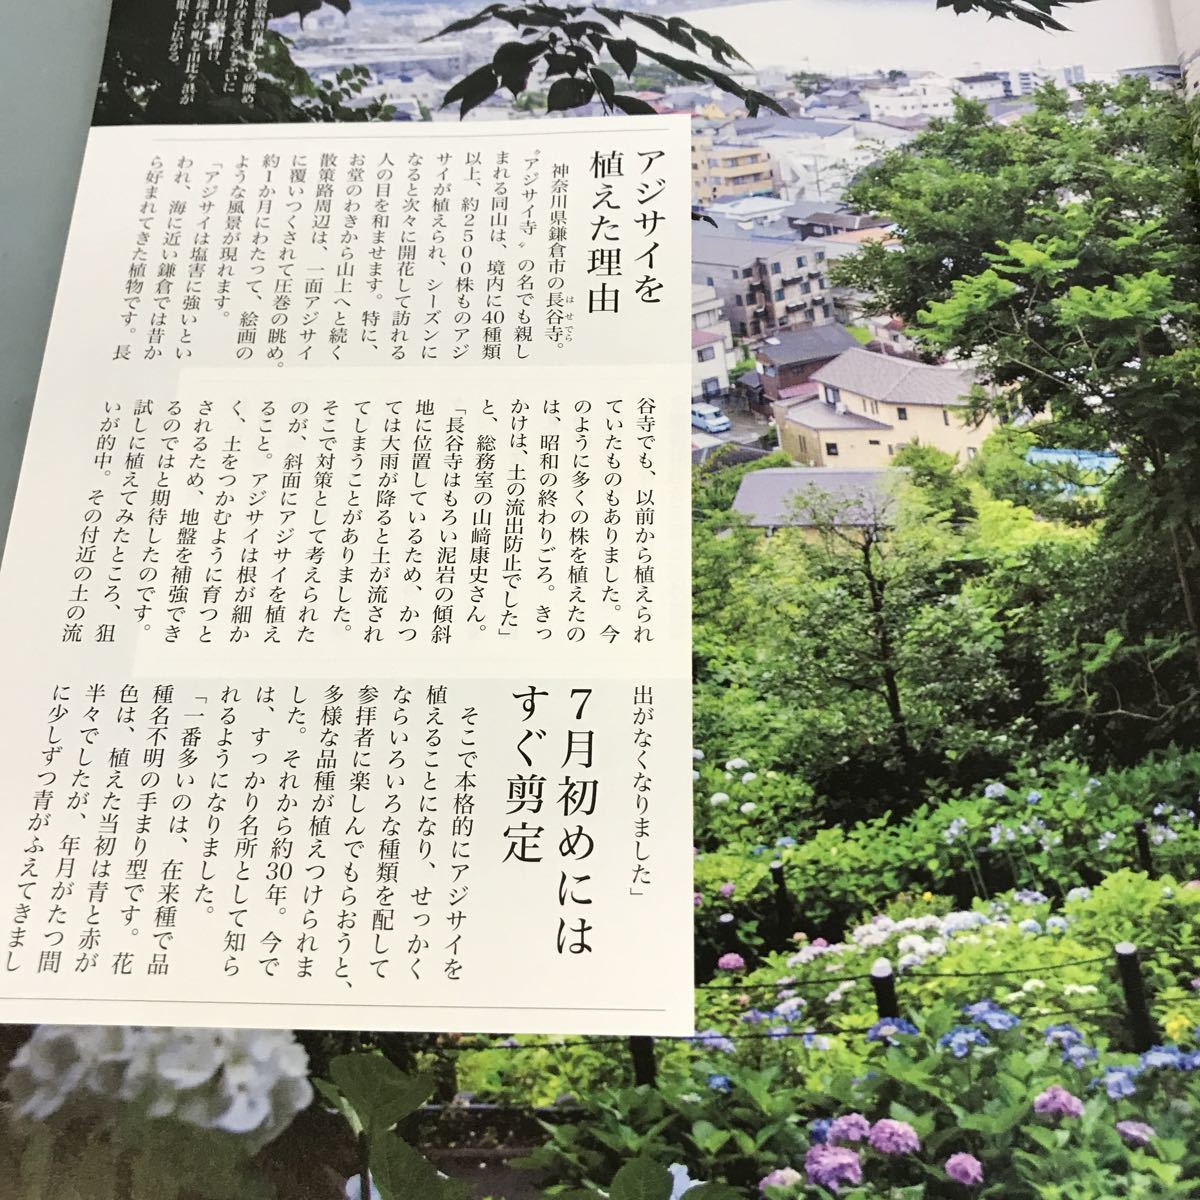 A58-109 NHK хобби. садоводство 2018 6 роскошный ., возможно .. гортензия /koke террариум NHK выпускать 